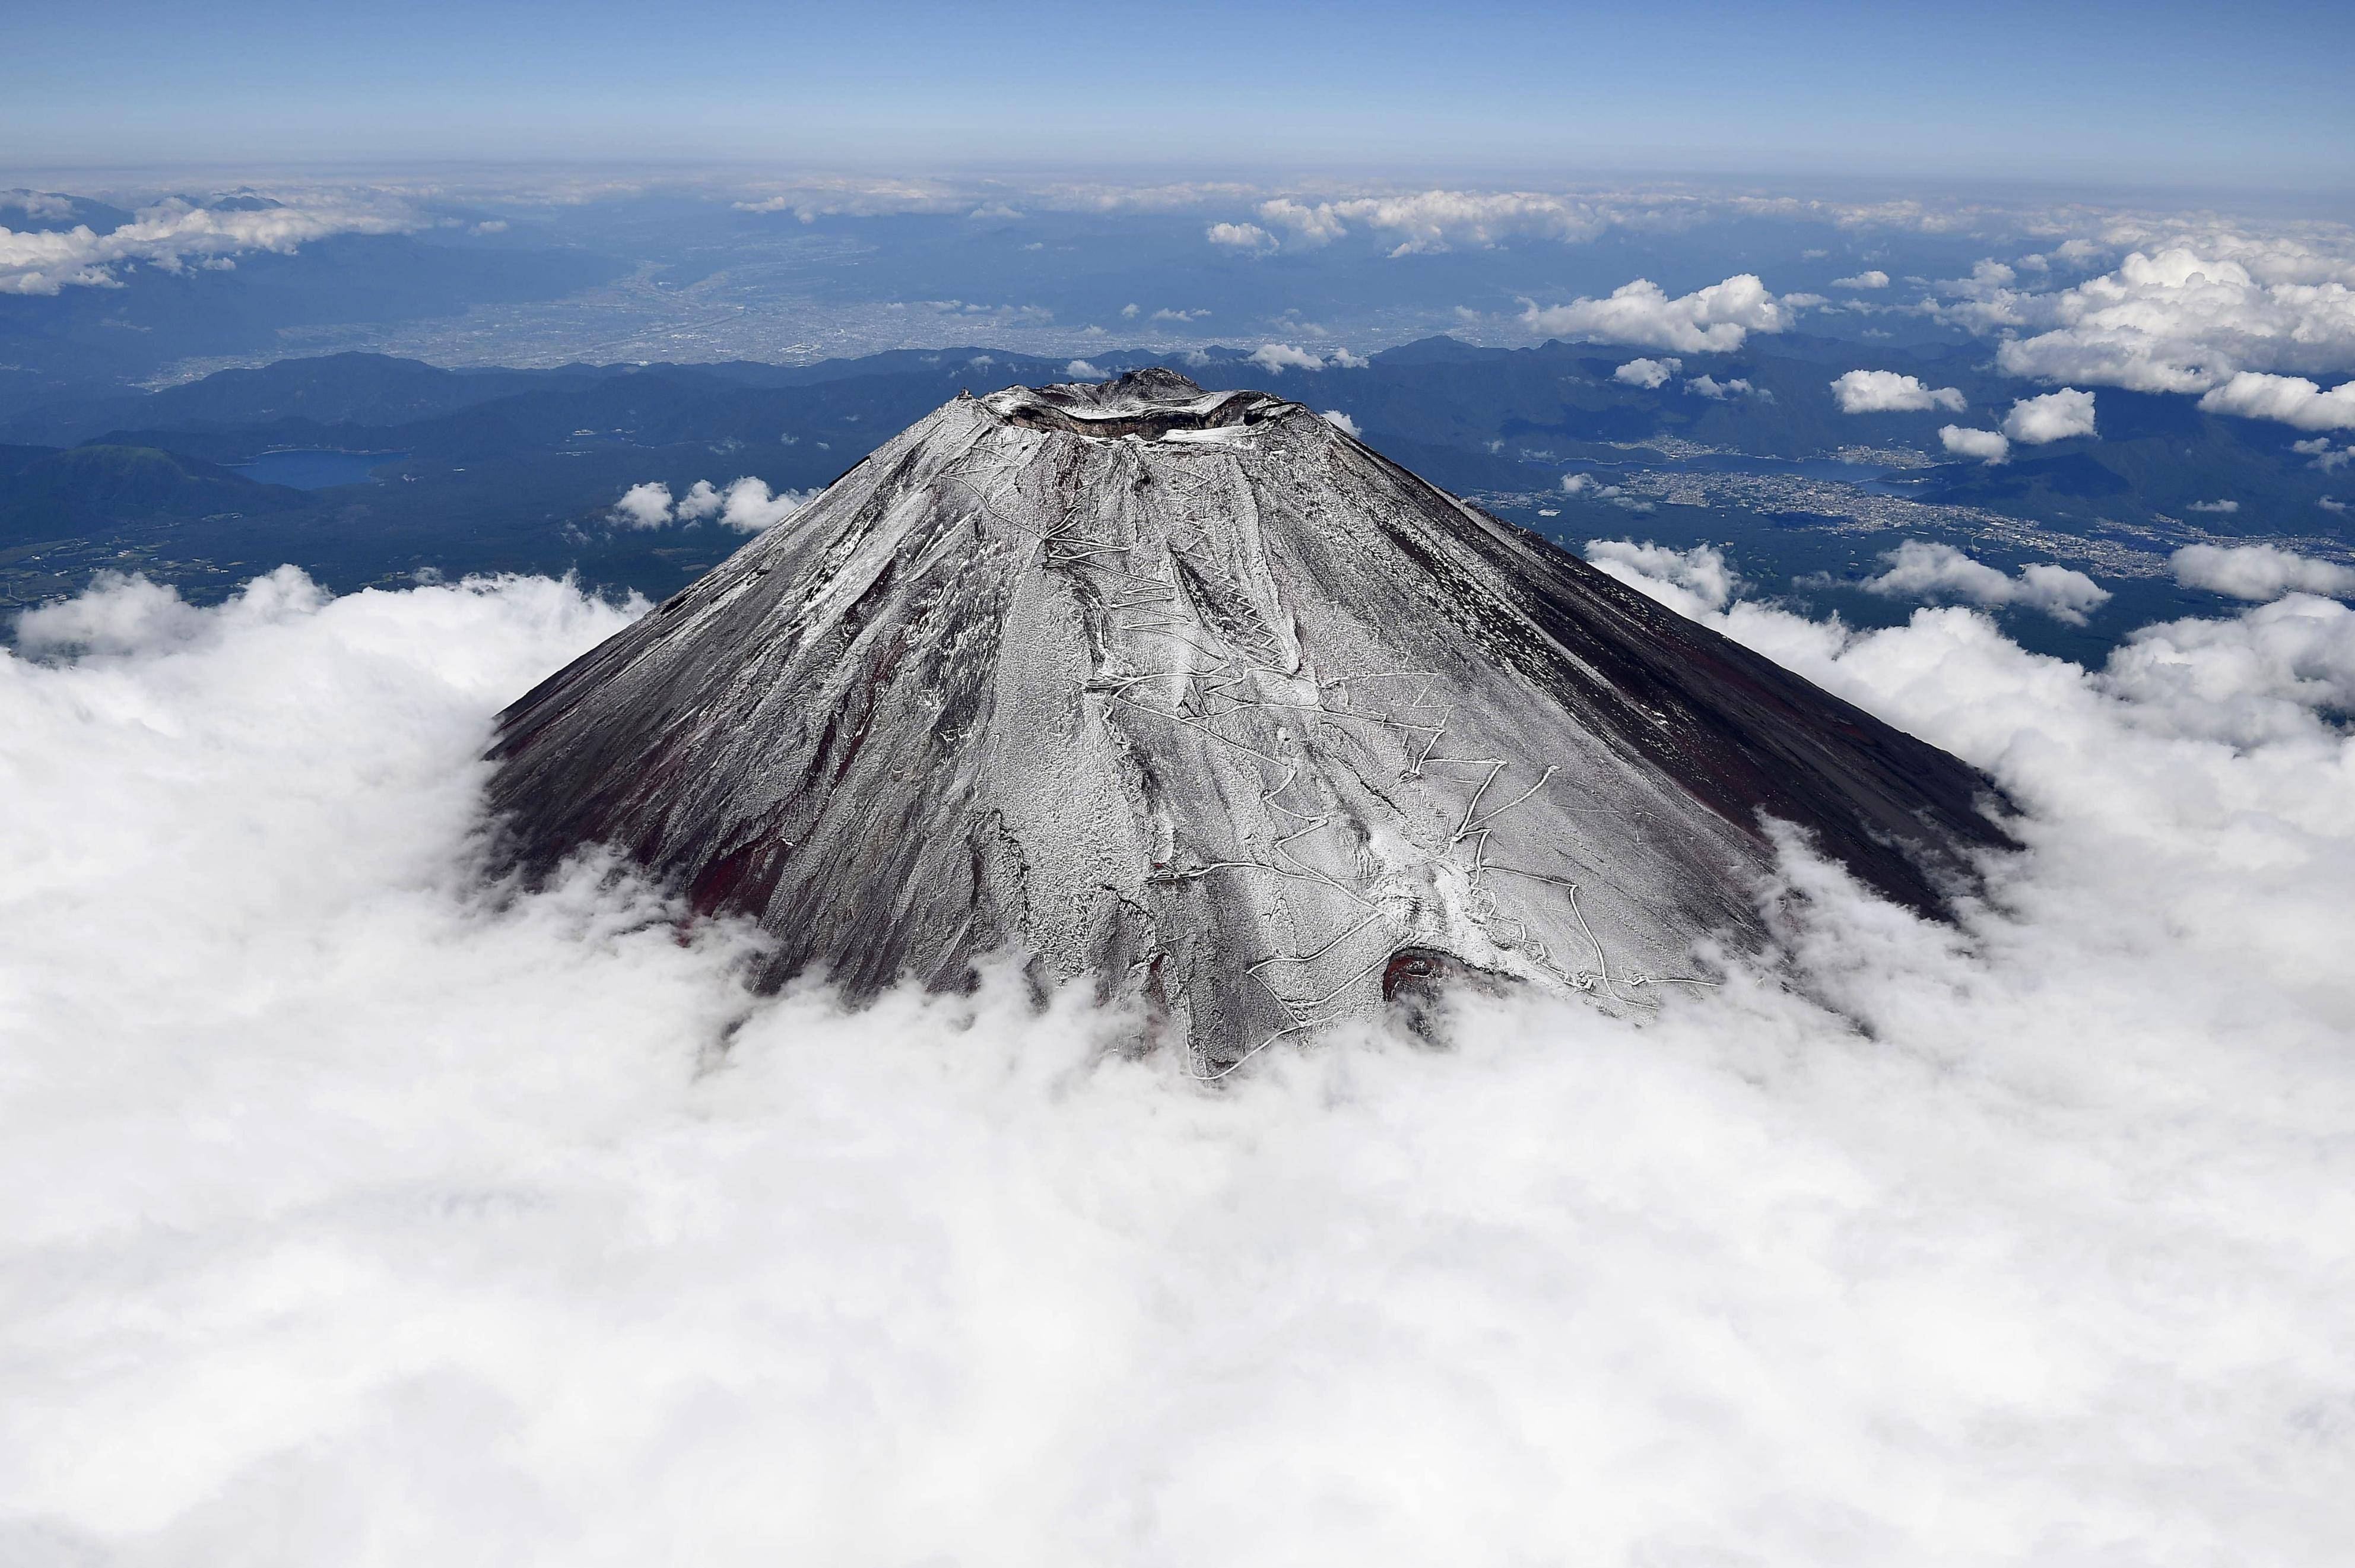 日本富士山喷火口增加近6倍专家称随时都有喷发可能 韩媒 日本富士山喷火口增加近6倍 火山 汤加